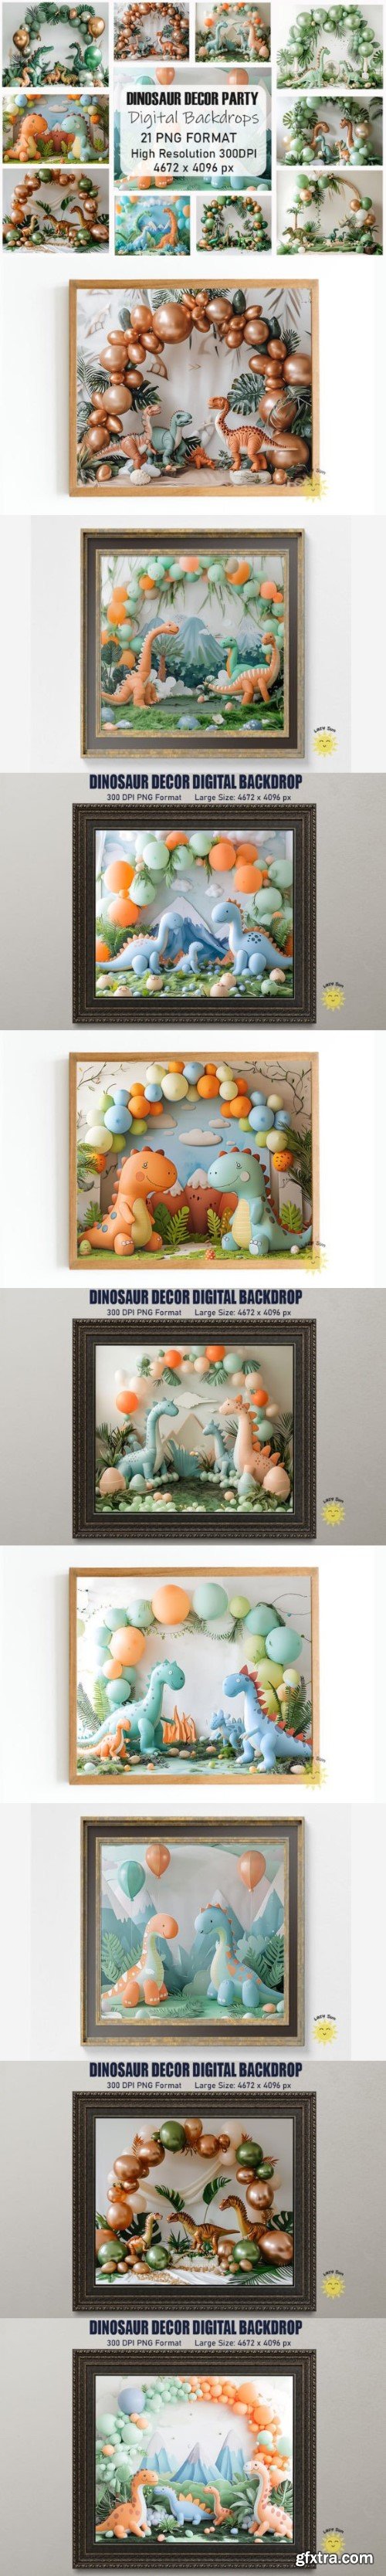 Dinosaur Decor Digital Backdrops